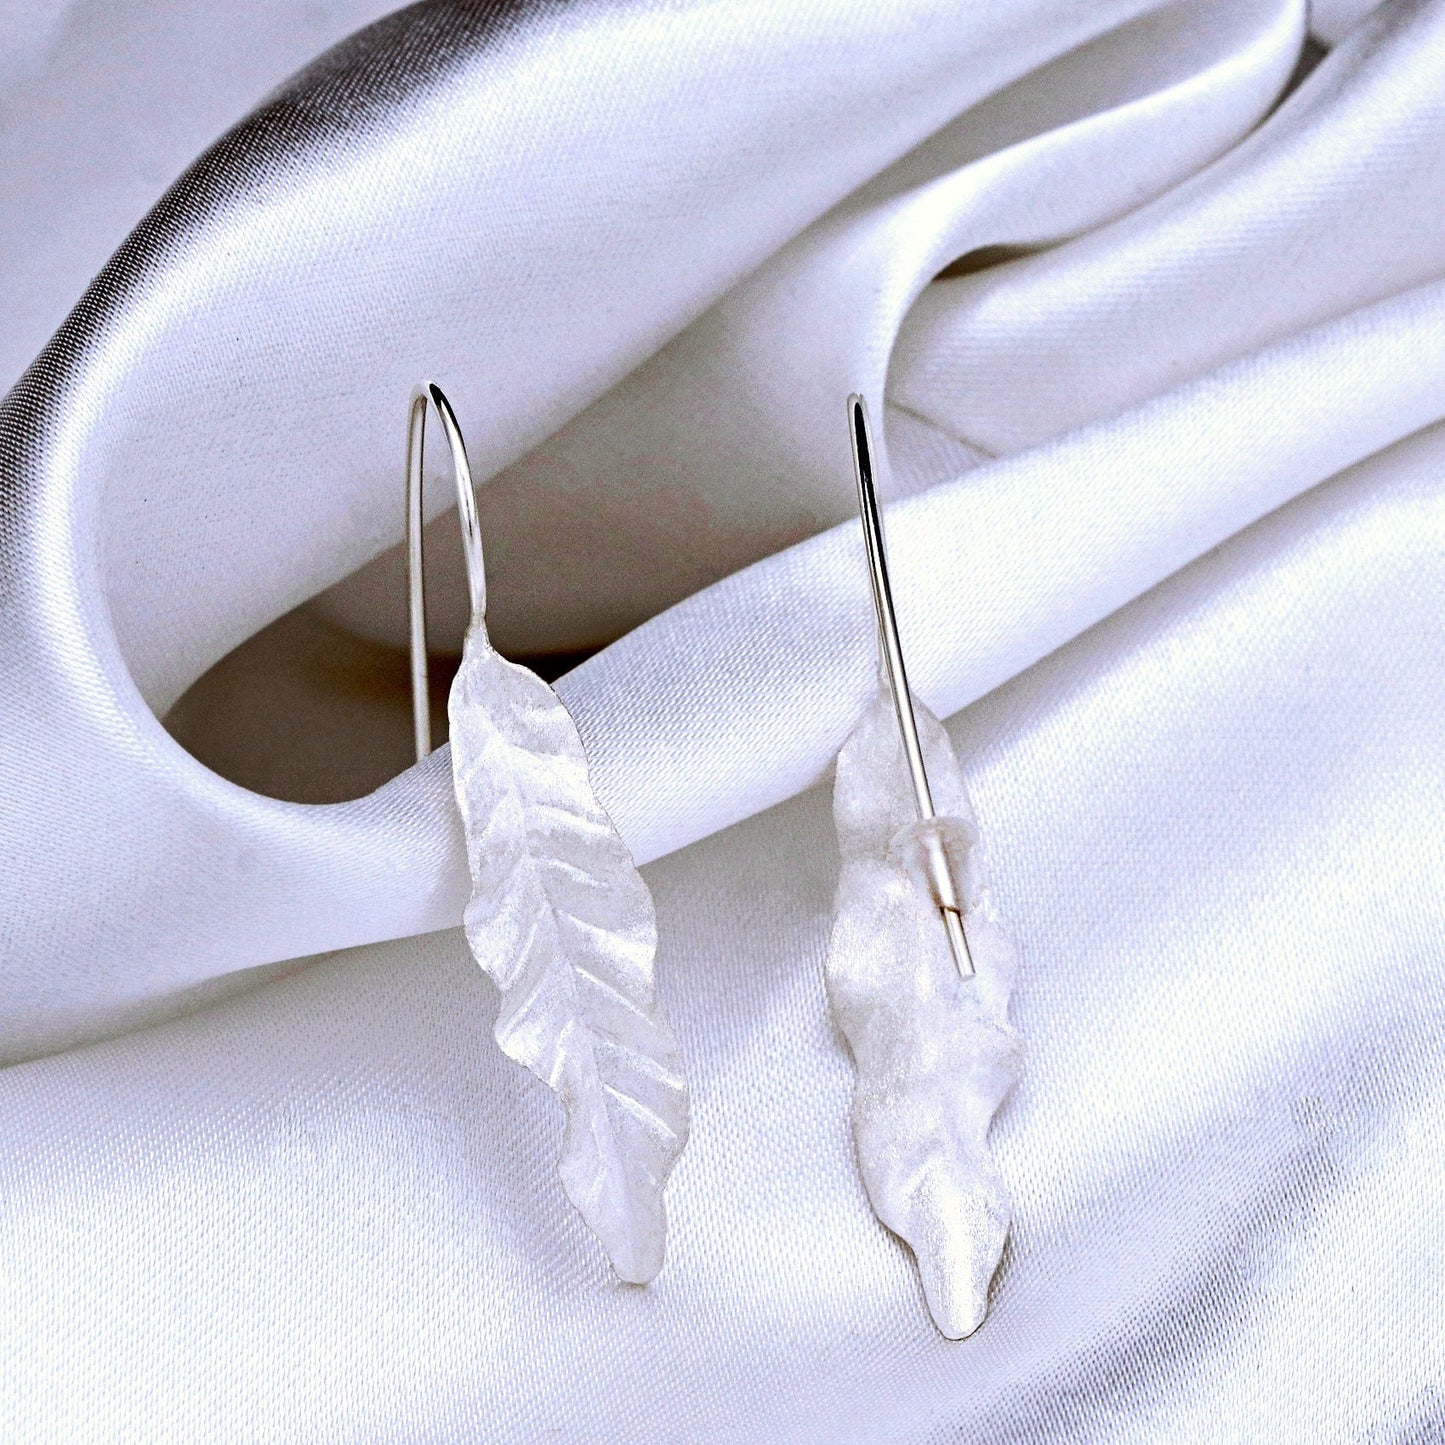 Long Leaves Earrings - 925 Sterling Silver Earrings - Elegant Nature Accessories - Ear925-122